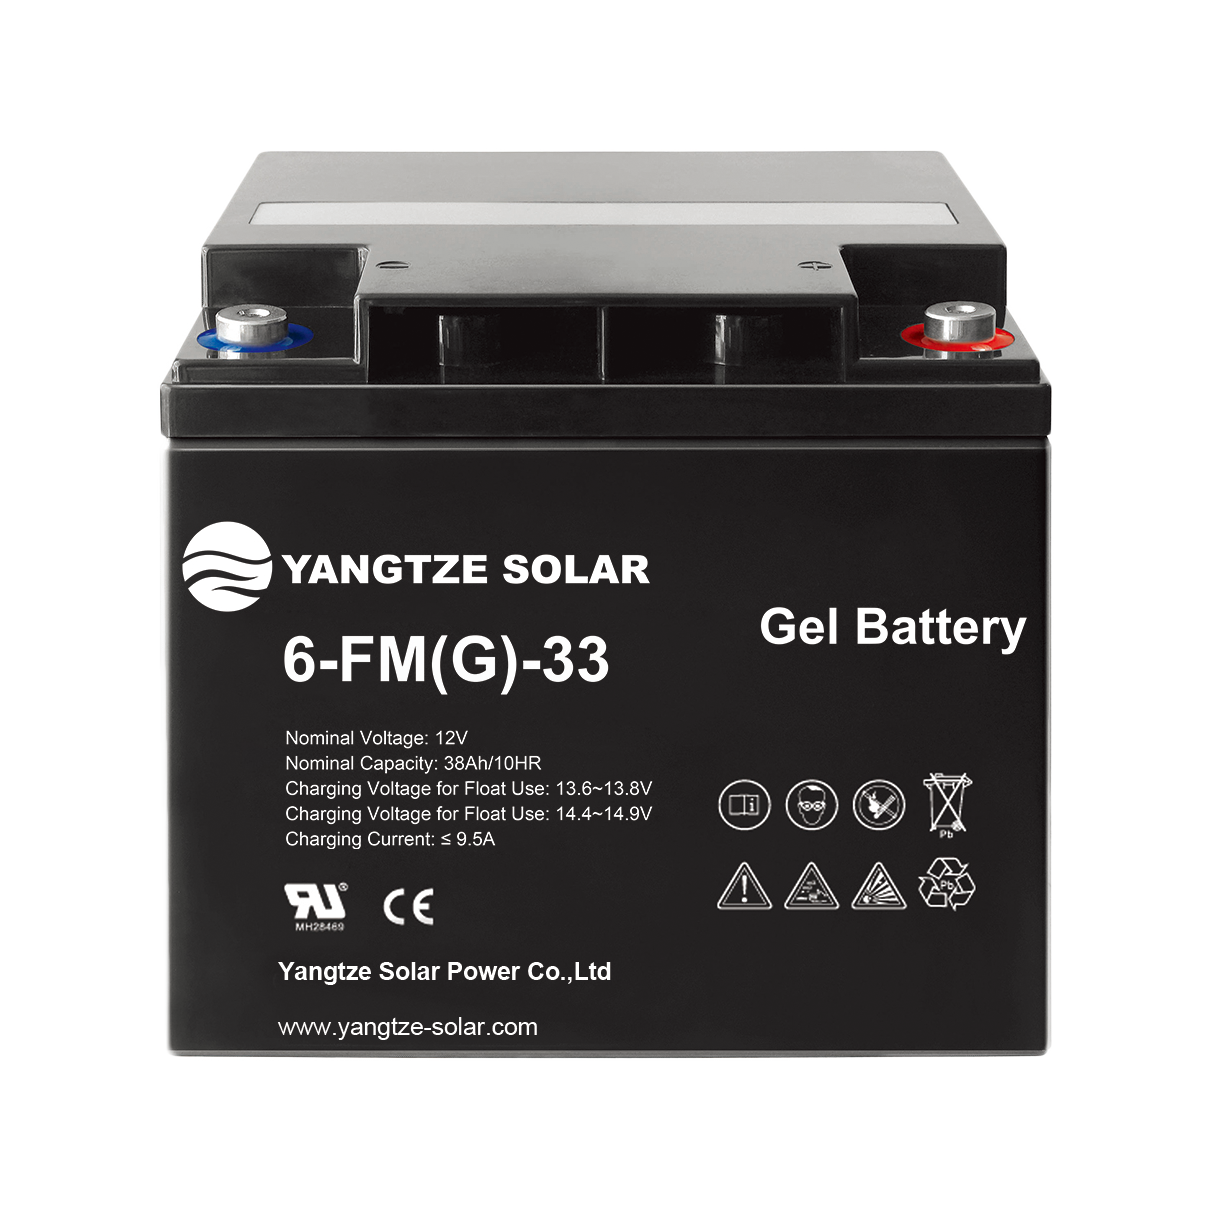 Gel Battery 12v 33ah Manufacturers, Gel Battery 12v 33ah Factory, Supply Gel Battery 12v 33ah